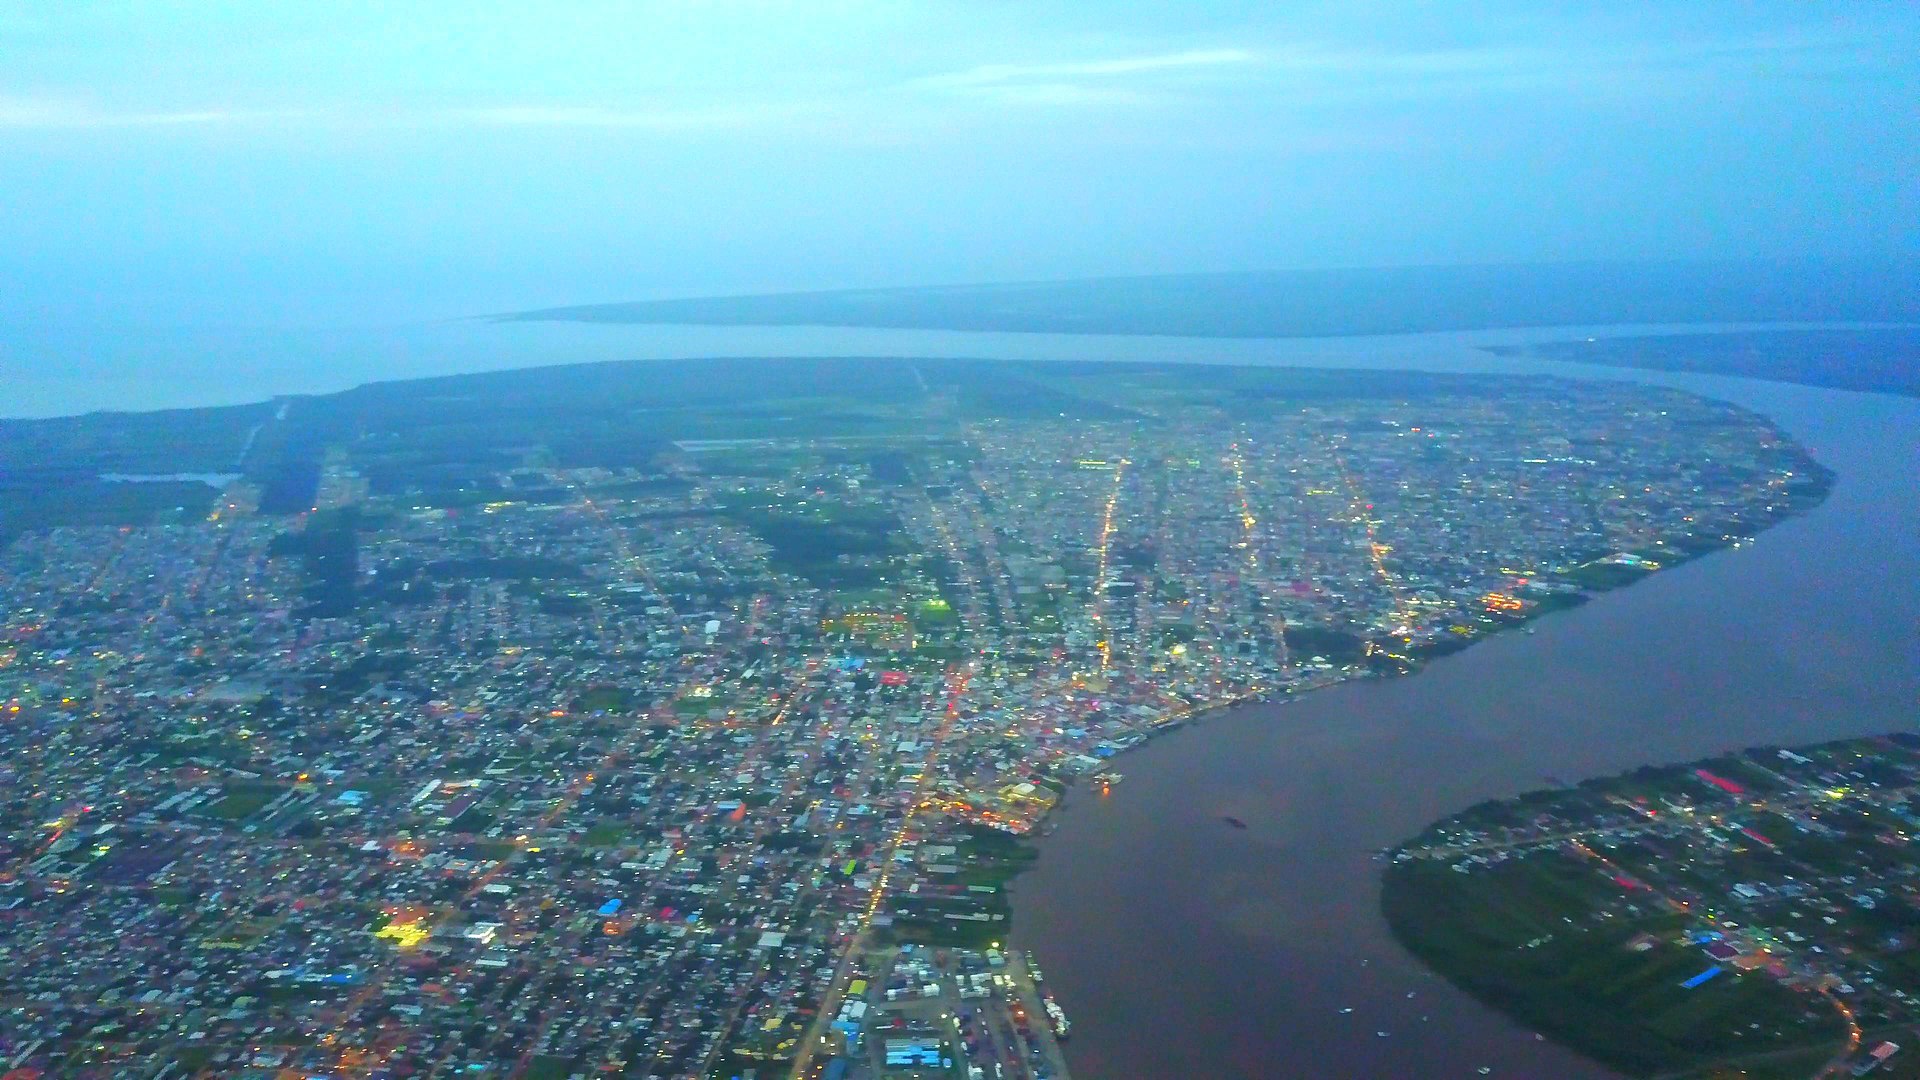 Image of Paramaribo